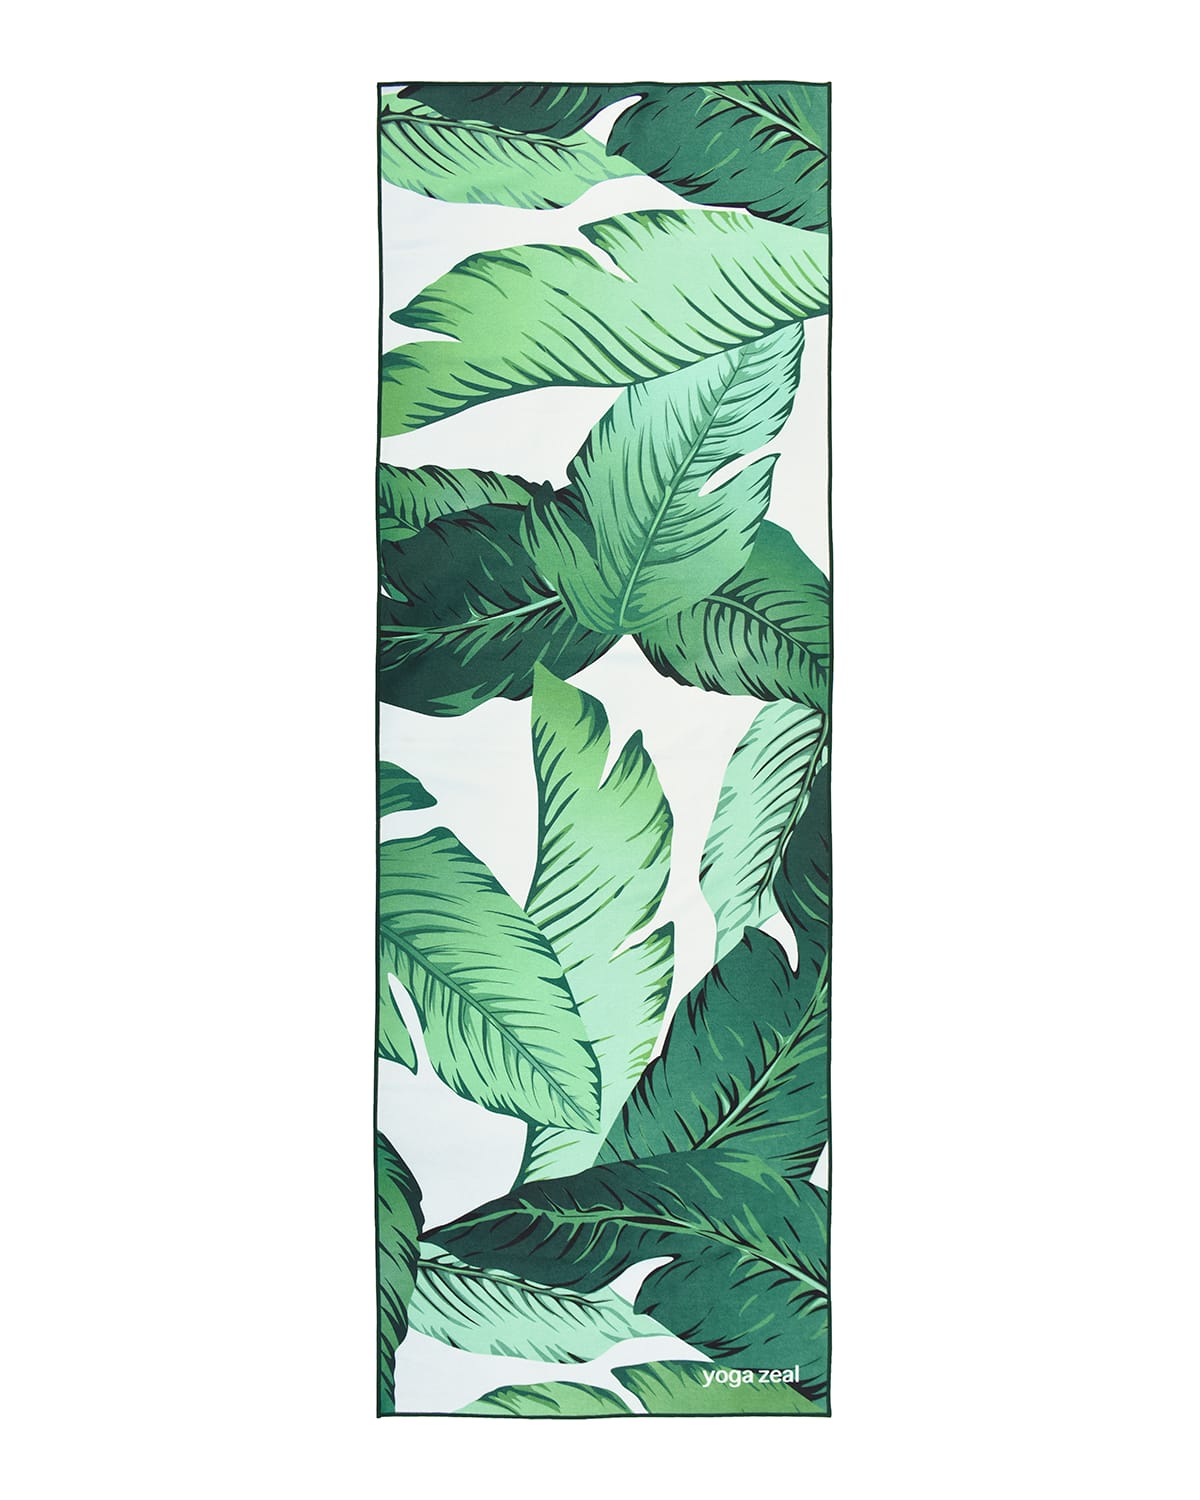 Yoga Zeal Banana Leaf Printed Yoga Towel In Green/white